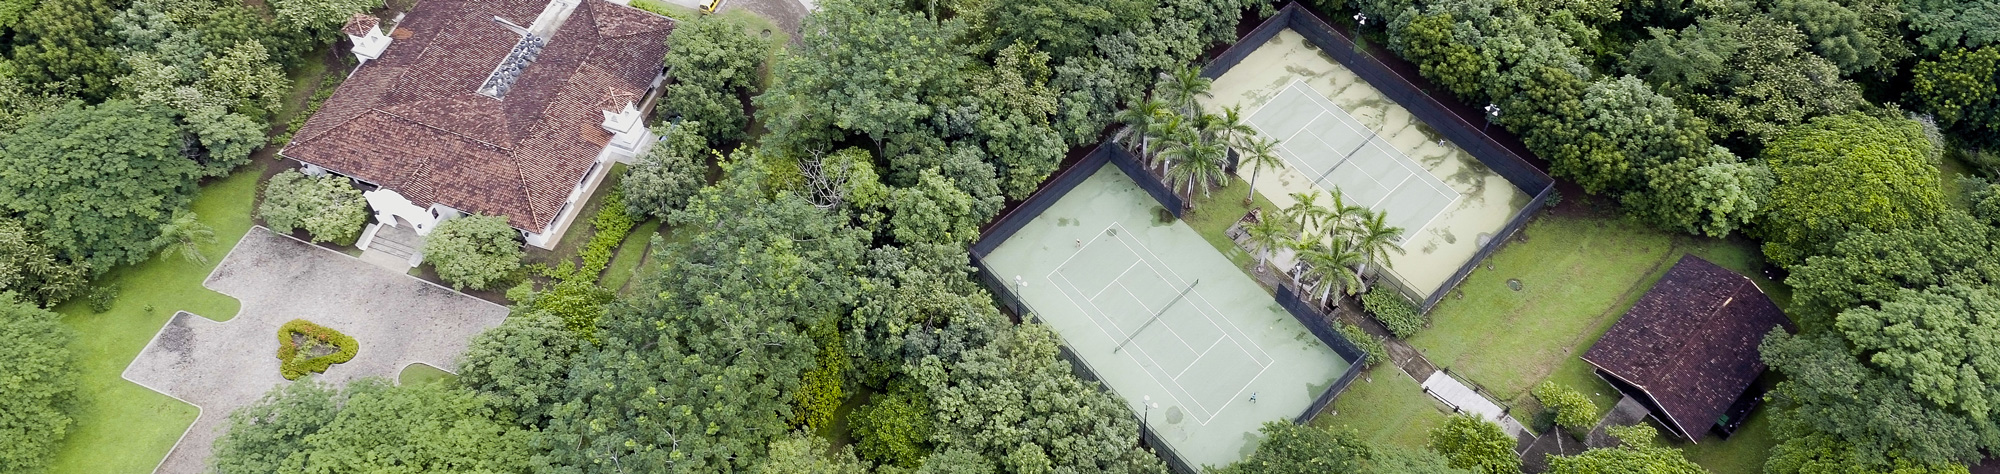 tennis courts at Hacienda Pinilla Costa Rica